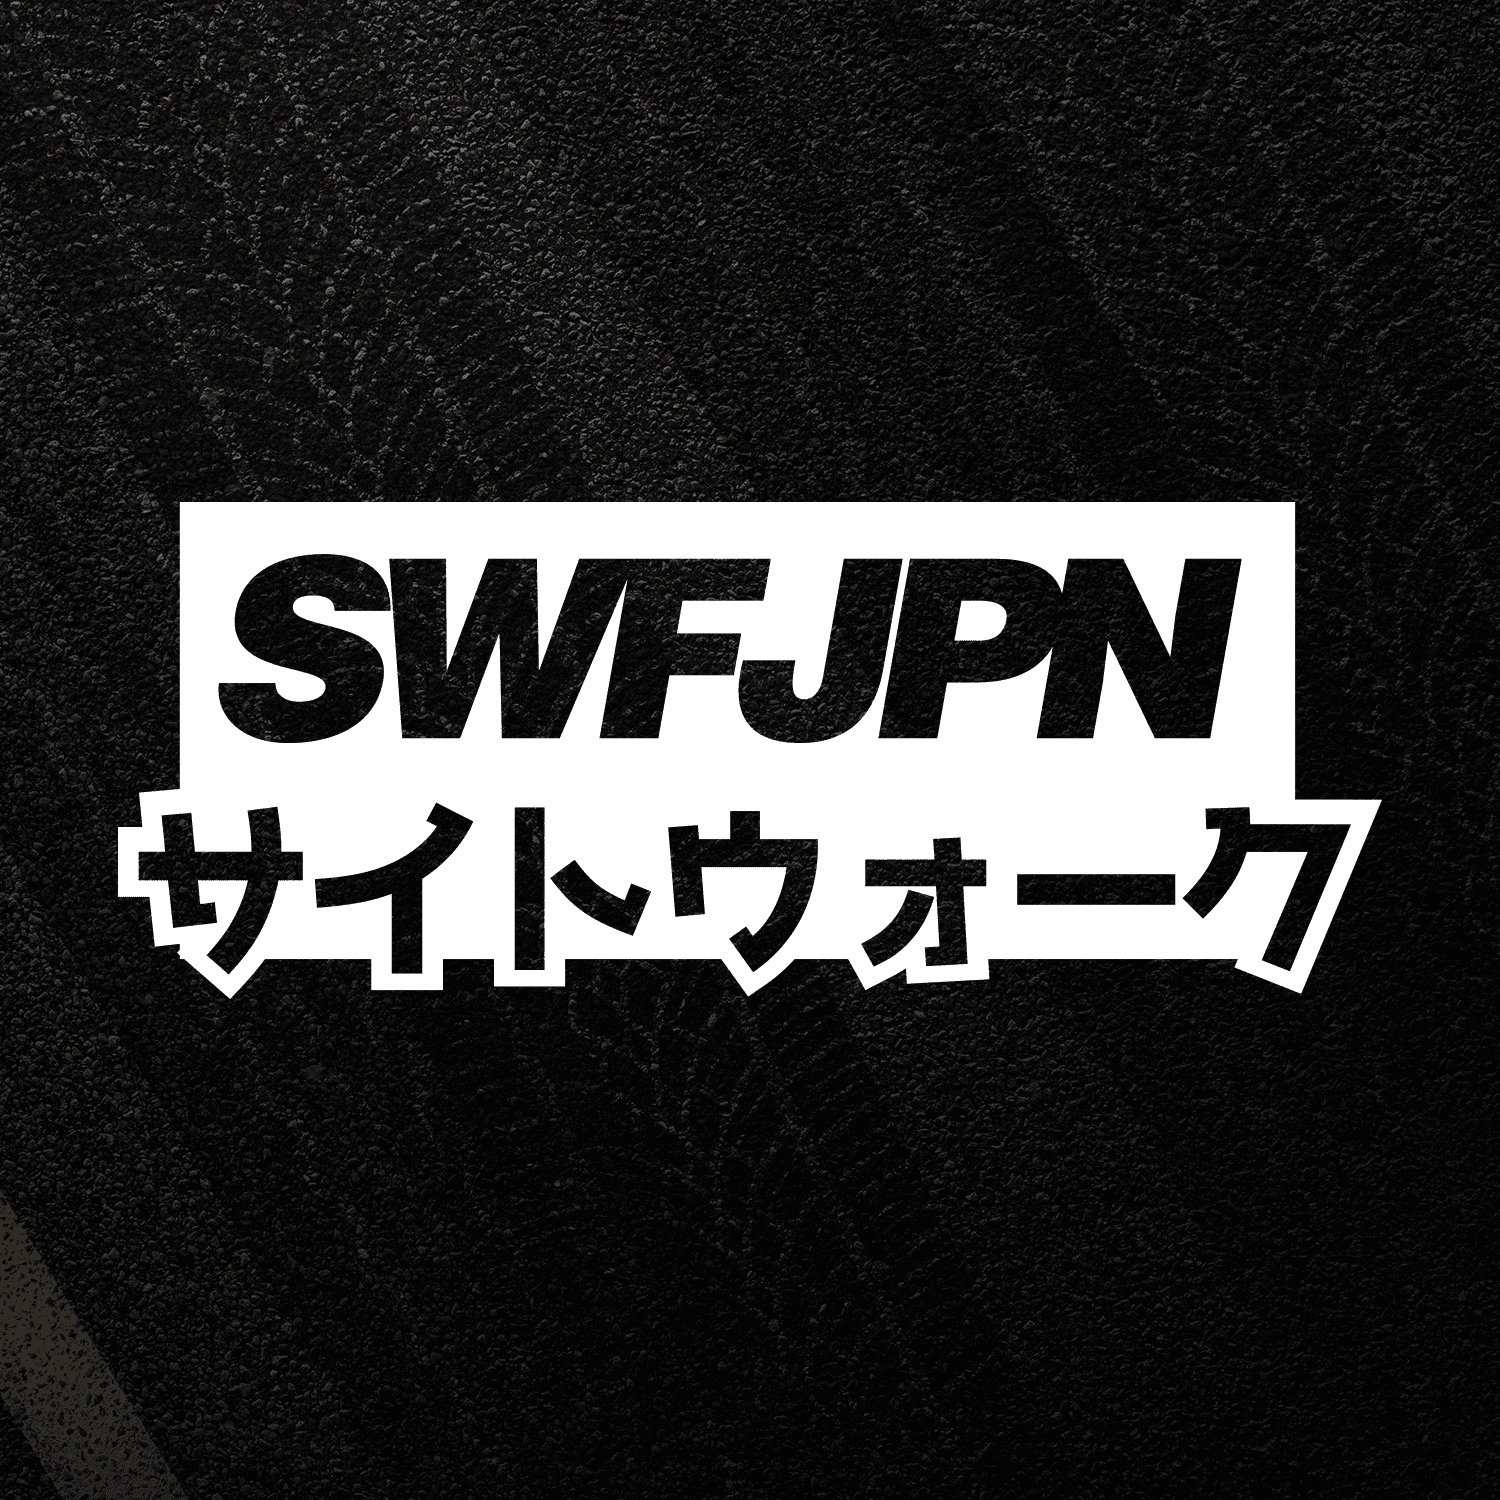 Details about ‘SWFJPN’ Katakana Japan JDM Logo Sticker Stance Tuner Drift  Die.